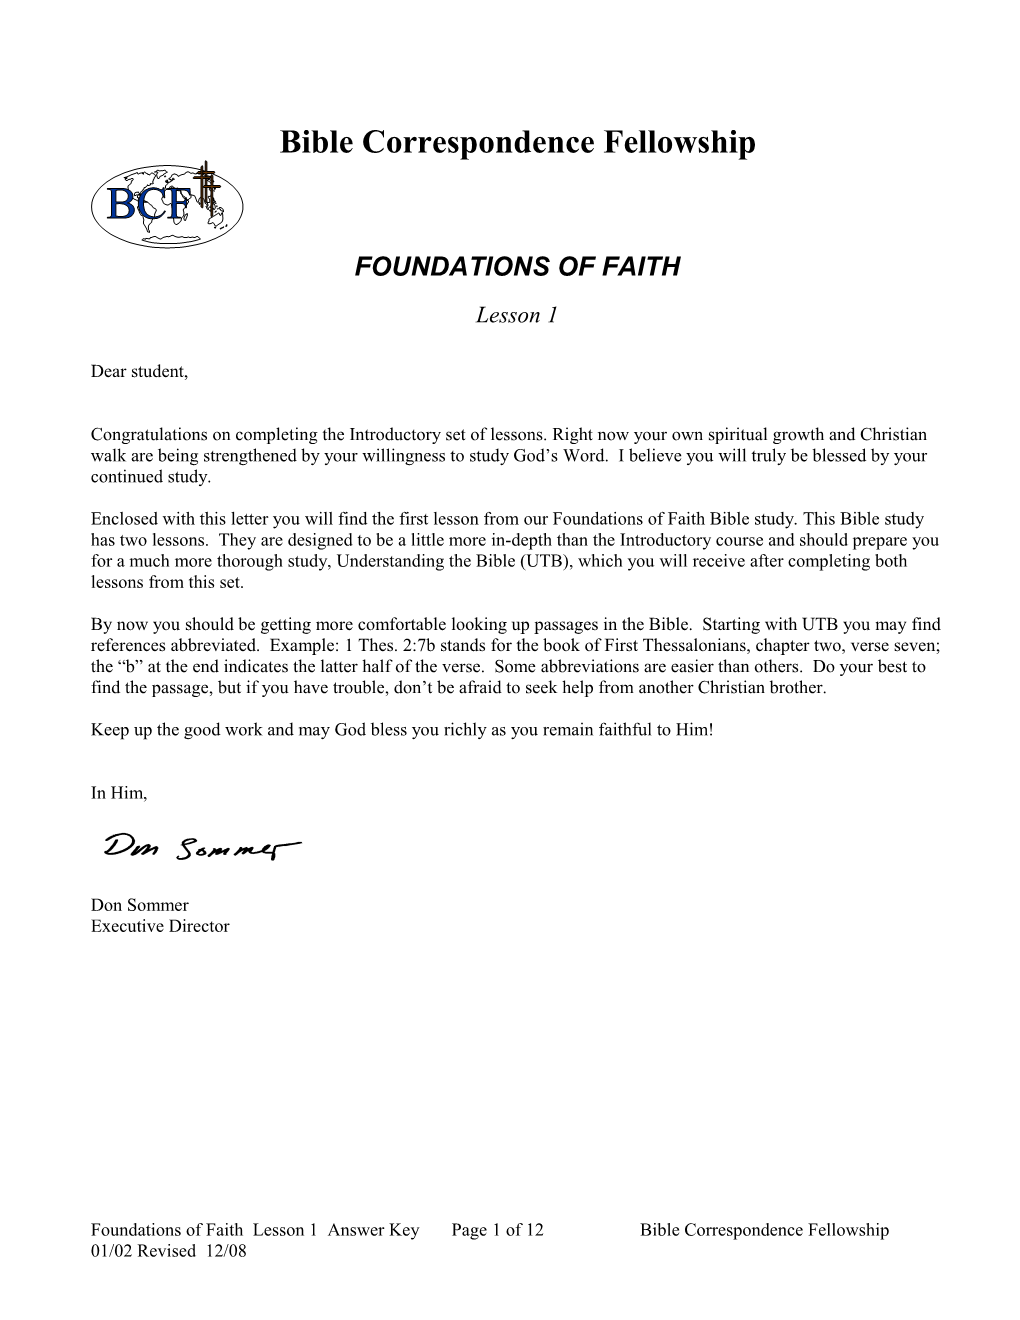 Foundations of Faith 1 Answer Key